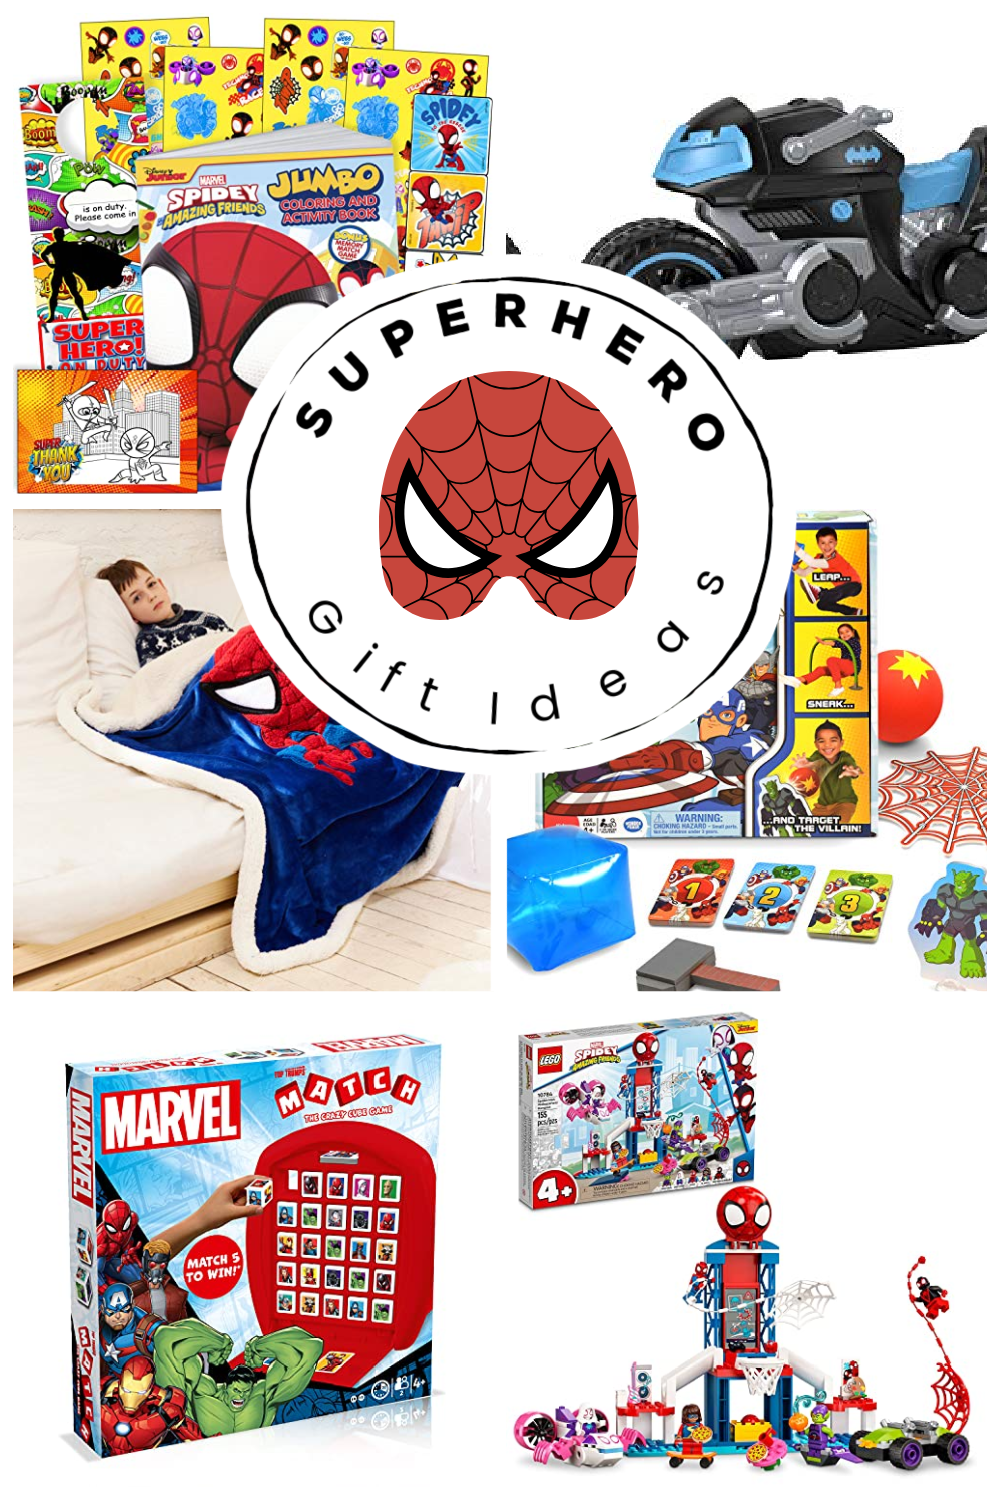 15 Superhero Gift Ideas for Kids